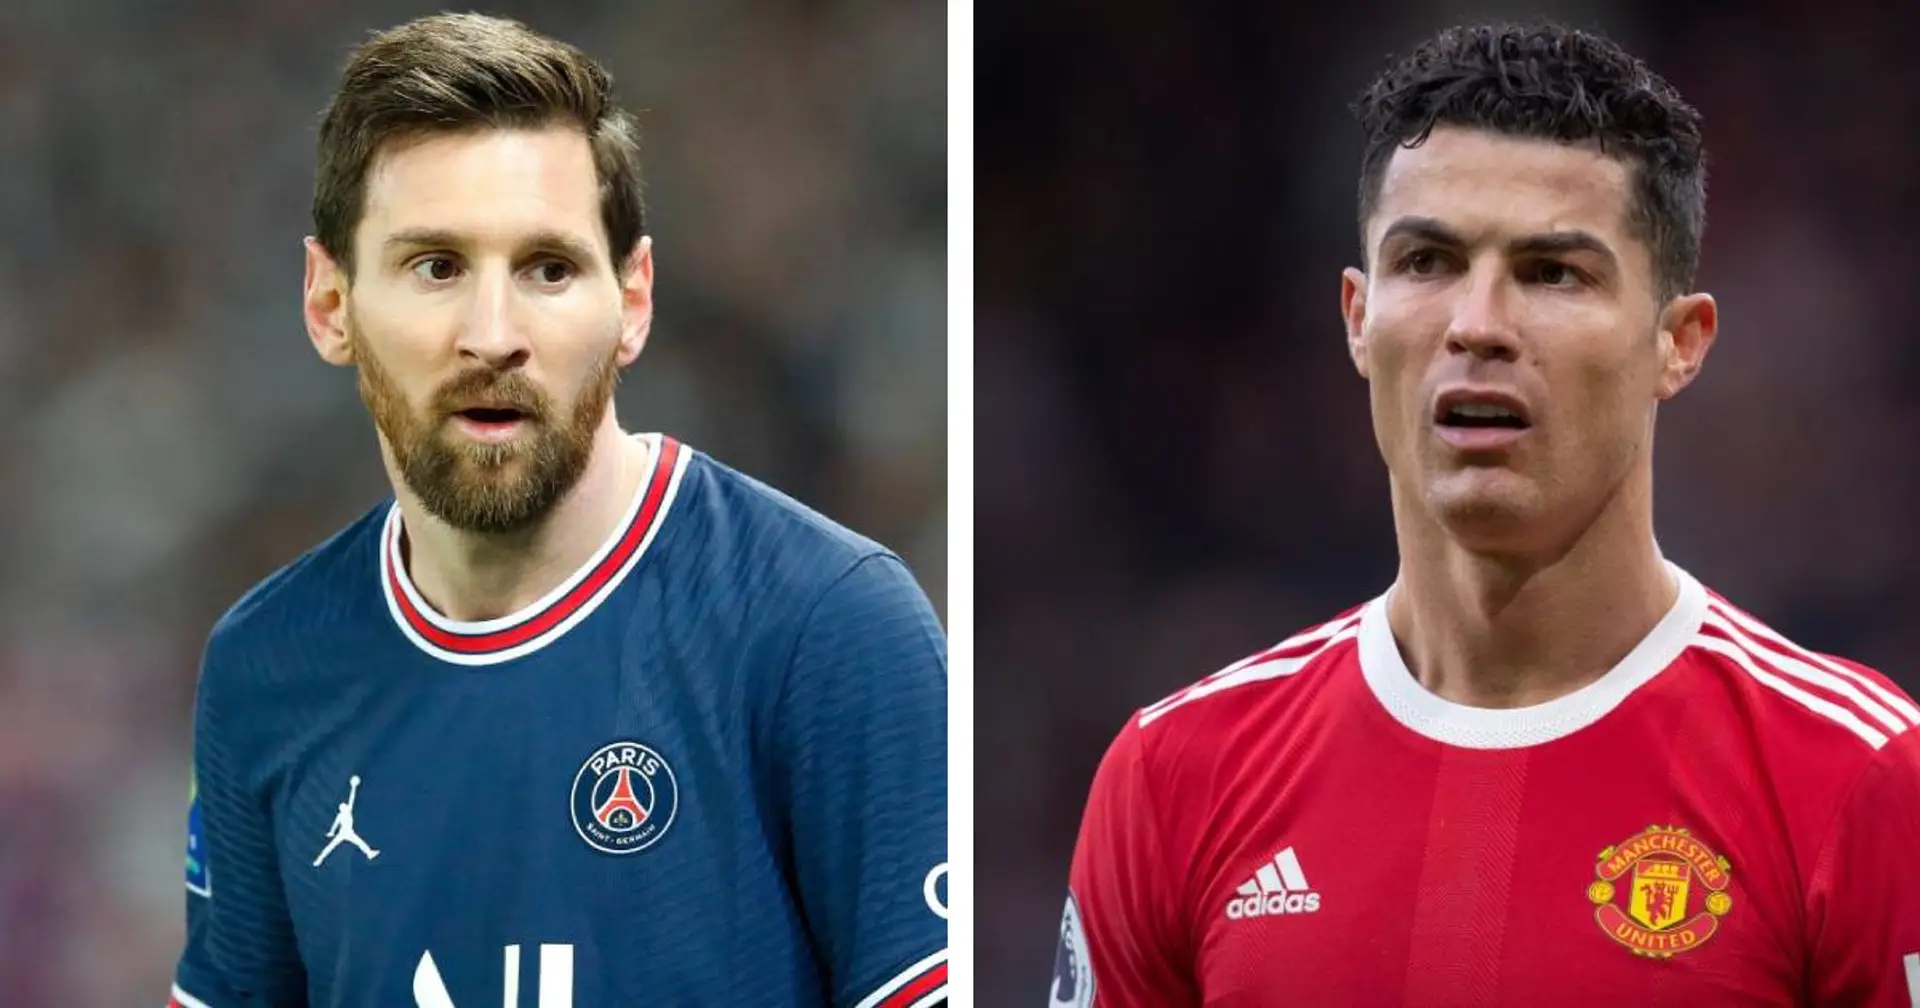 Anelkas hartes Urteil zu Messi und Ronaldo: "Ihre Karrieren sind vorbei"